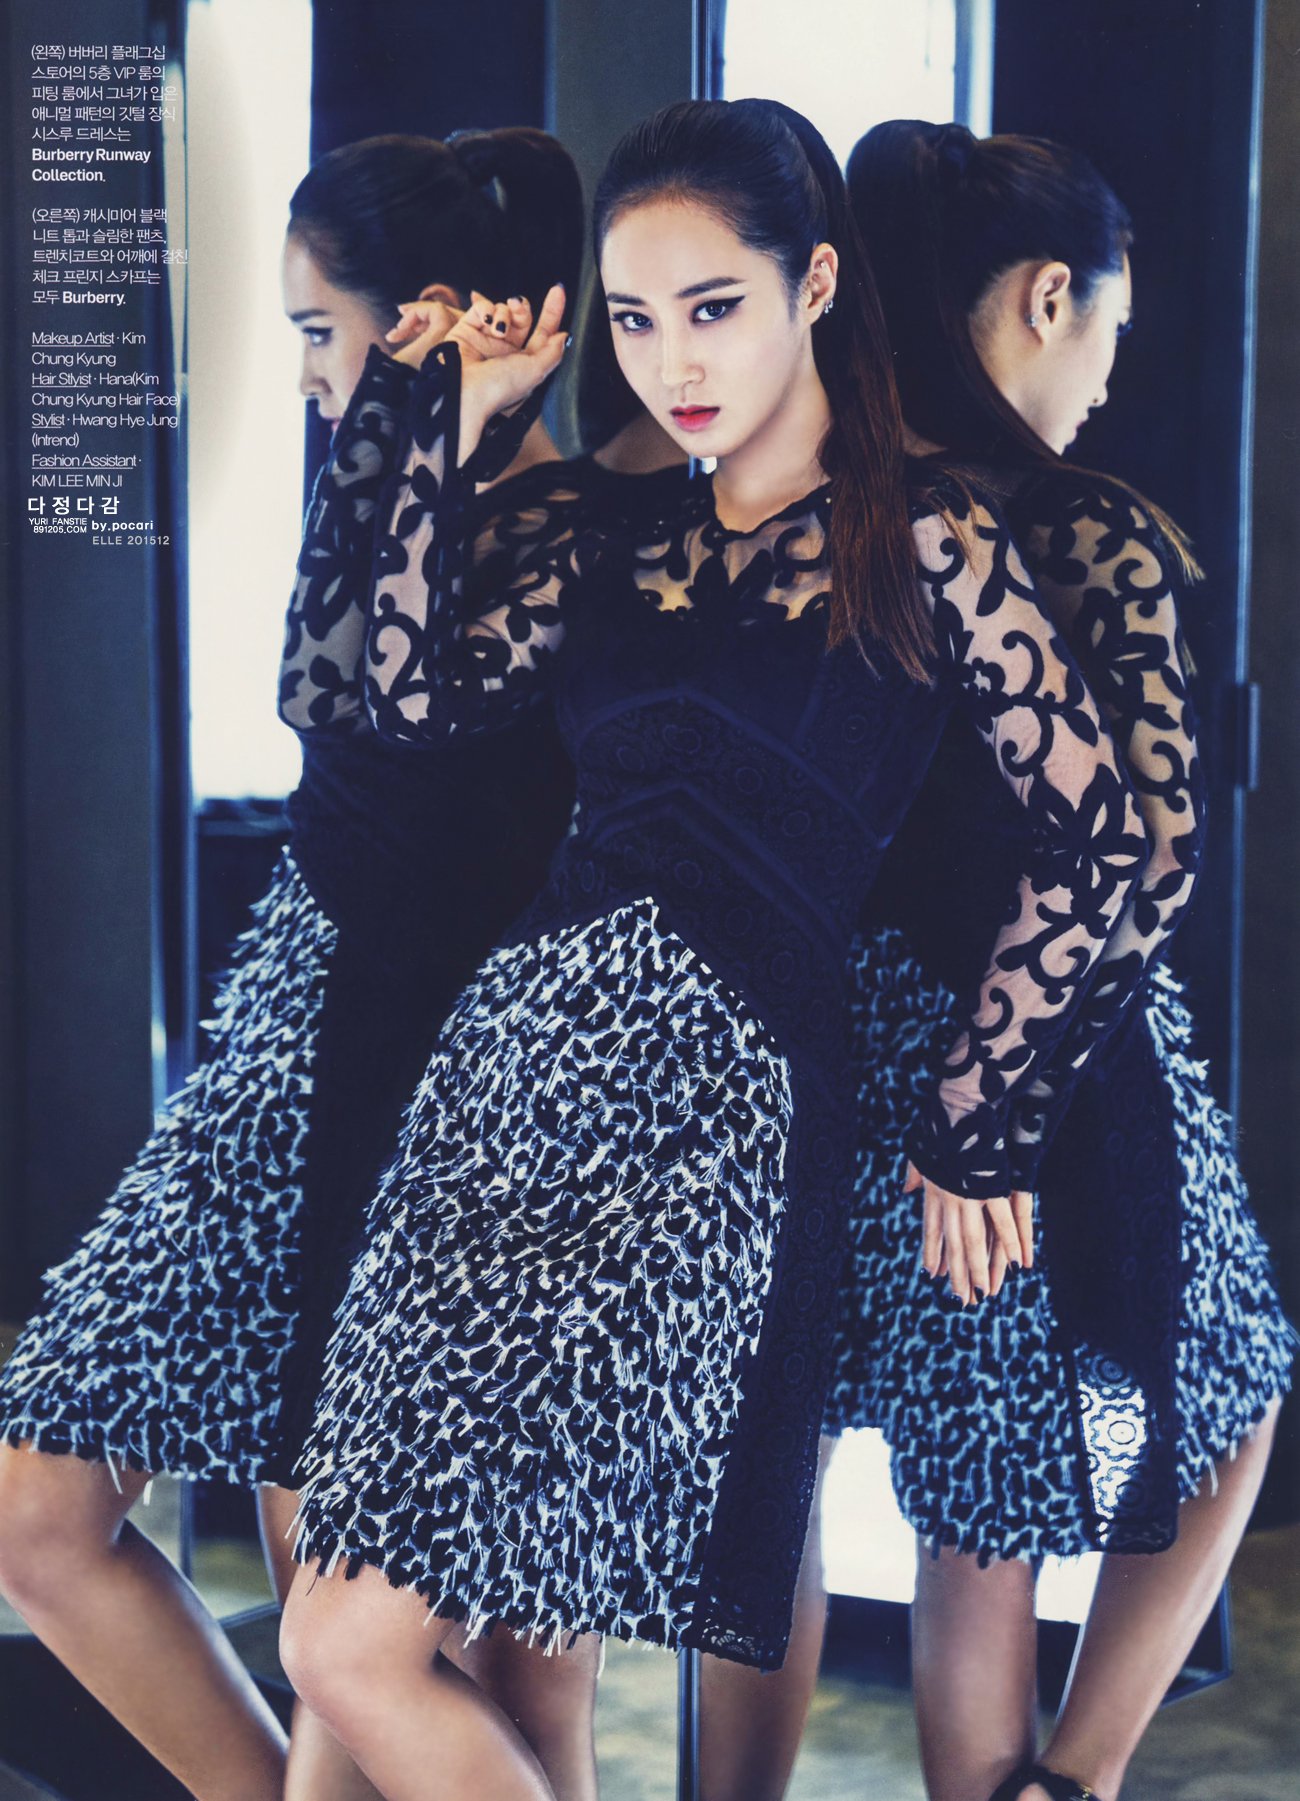 [PIC][20-11-2015]Yuri xuất hiện trên ấn phẩm tháng 12 của tạp chí "ELLE" Q6LUED3lKI-3000x3000